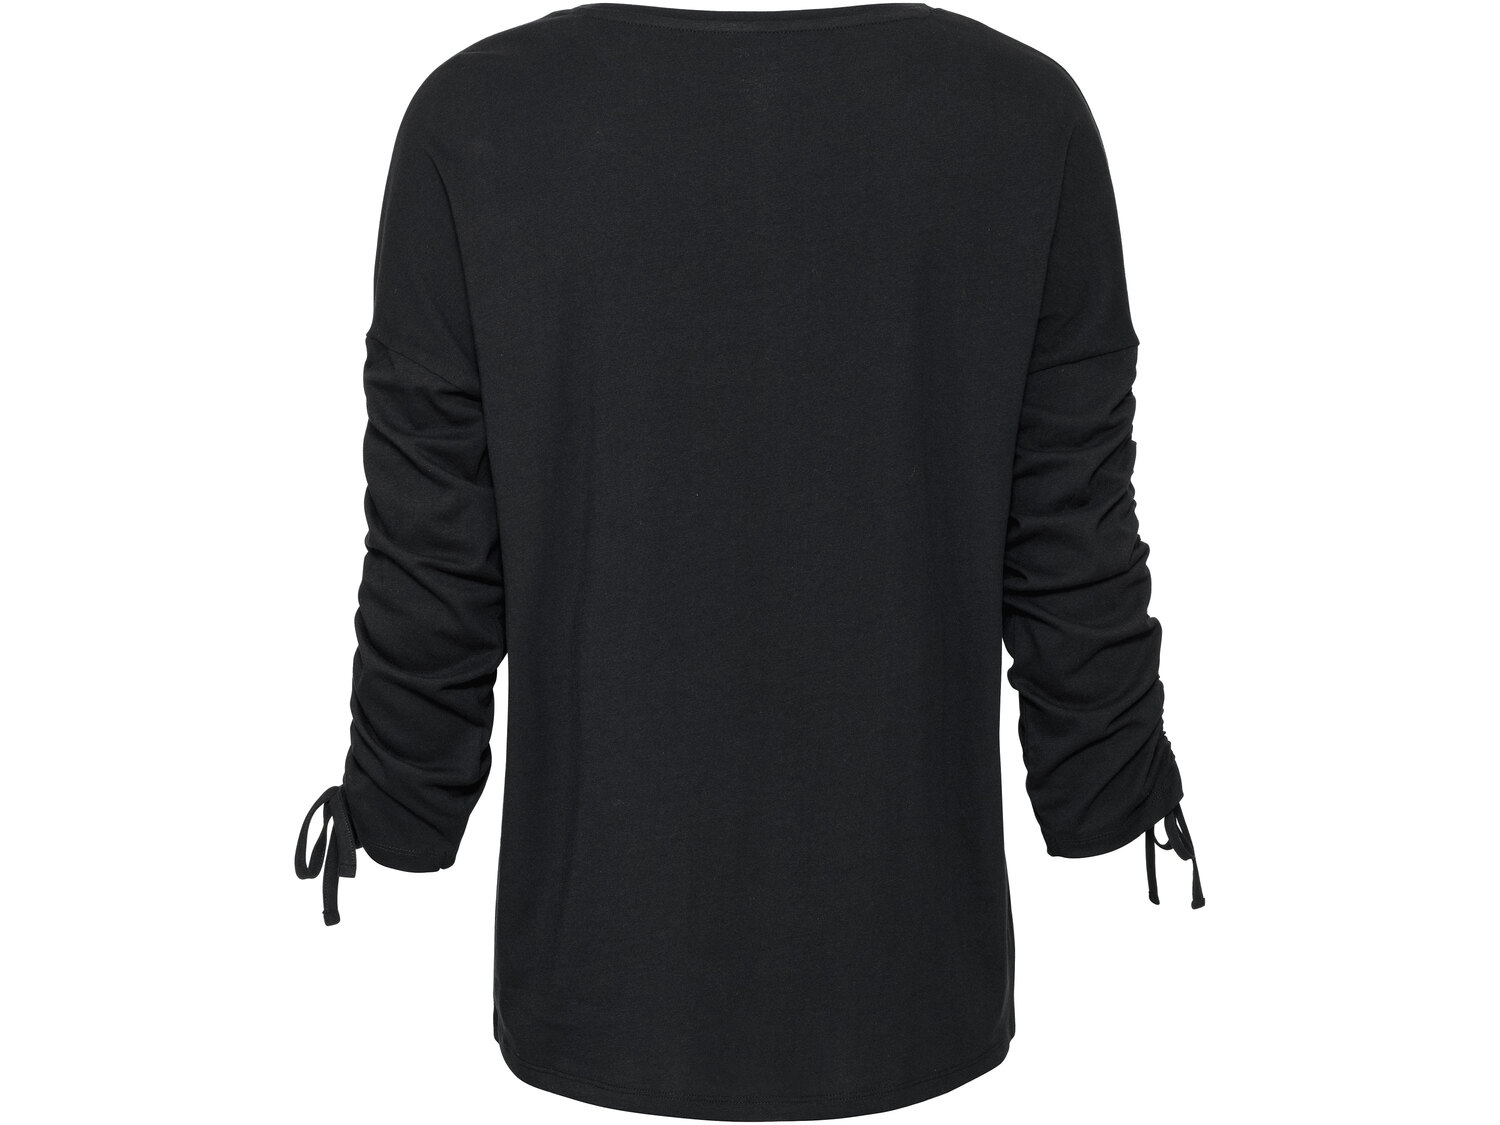 Bluzka damska z bawełny Esmara, cena 21,99 PLN 
- rozmiary: XS-L
- 100% bawełny
Dostępne ...